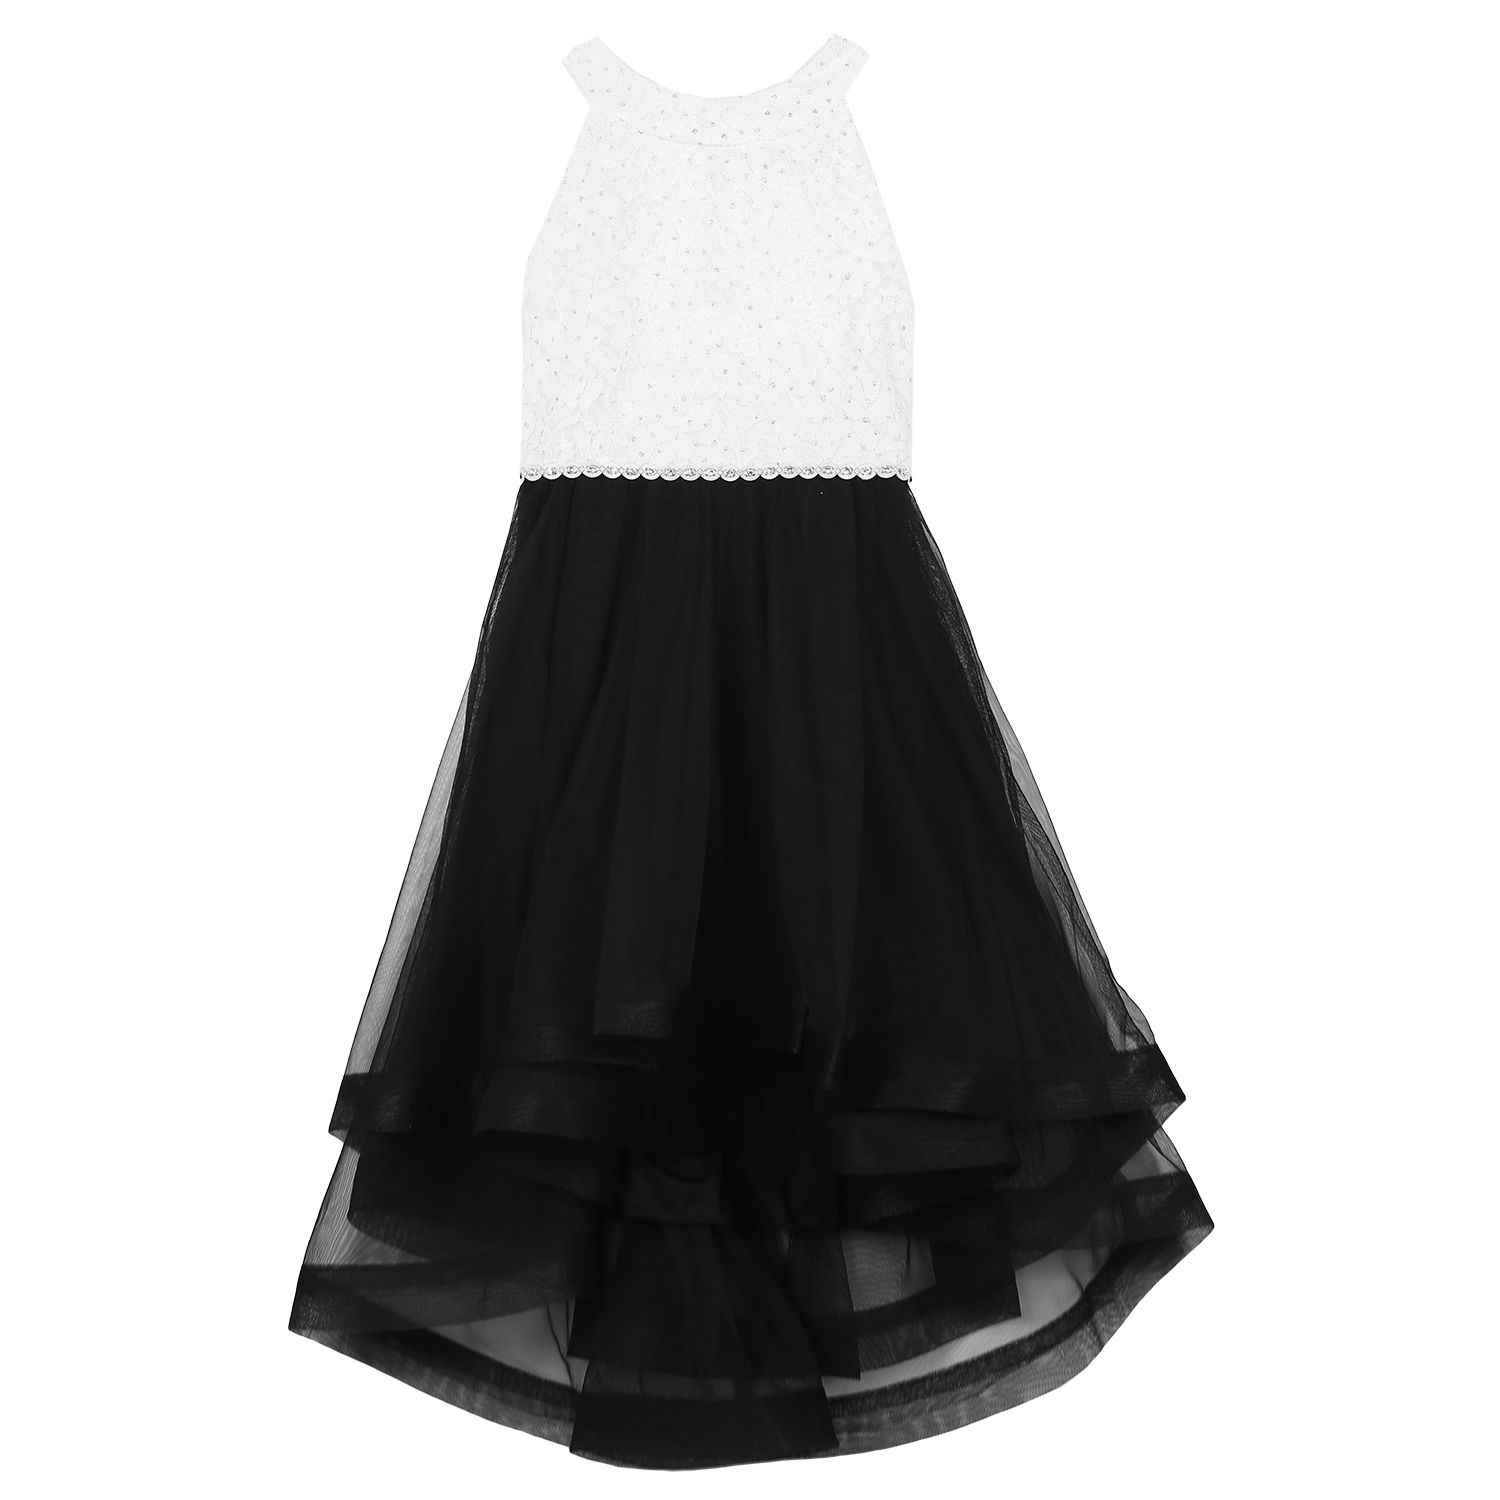 kohls black and white dress